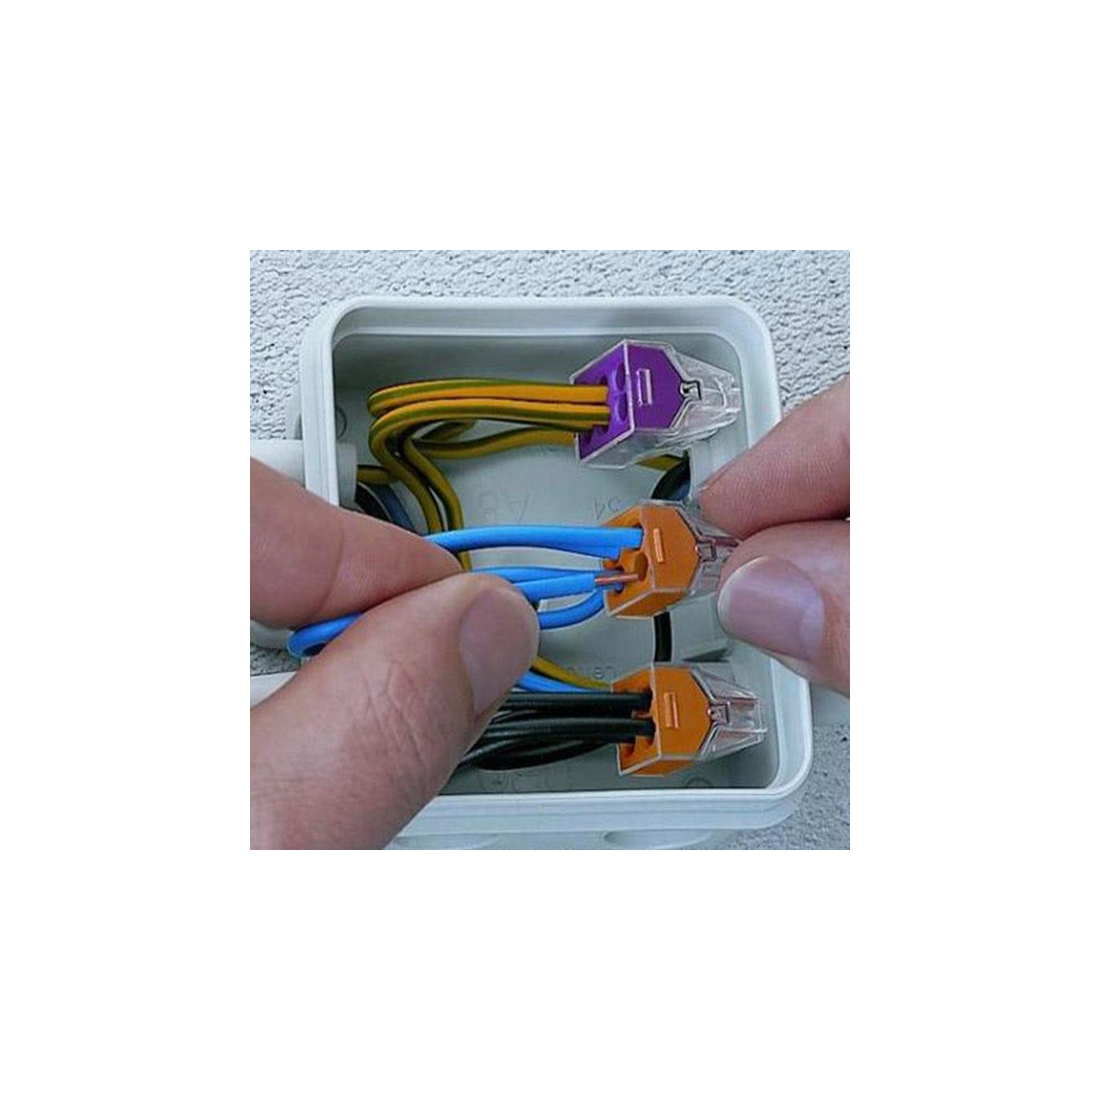 WAGO 773-173: Connecting socket terminal, 3-conductor terminal at